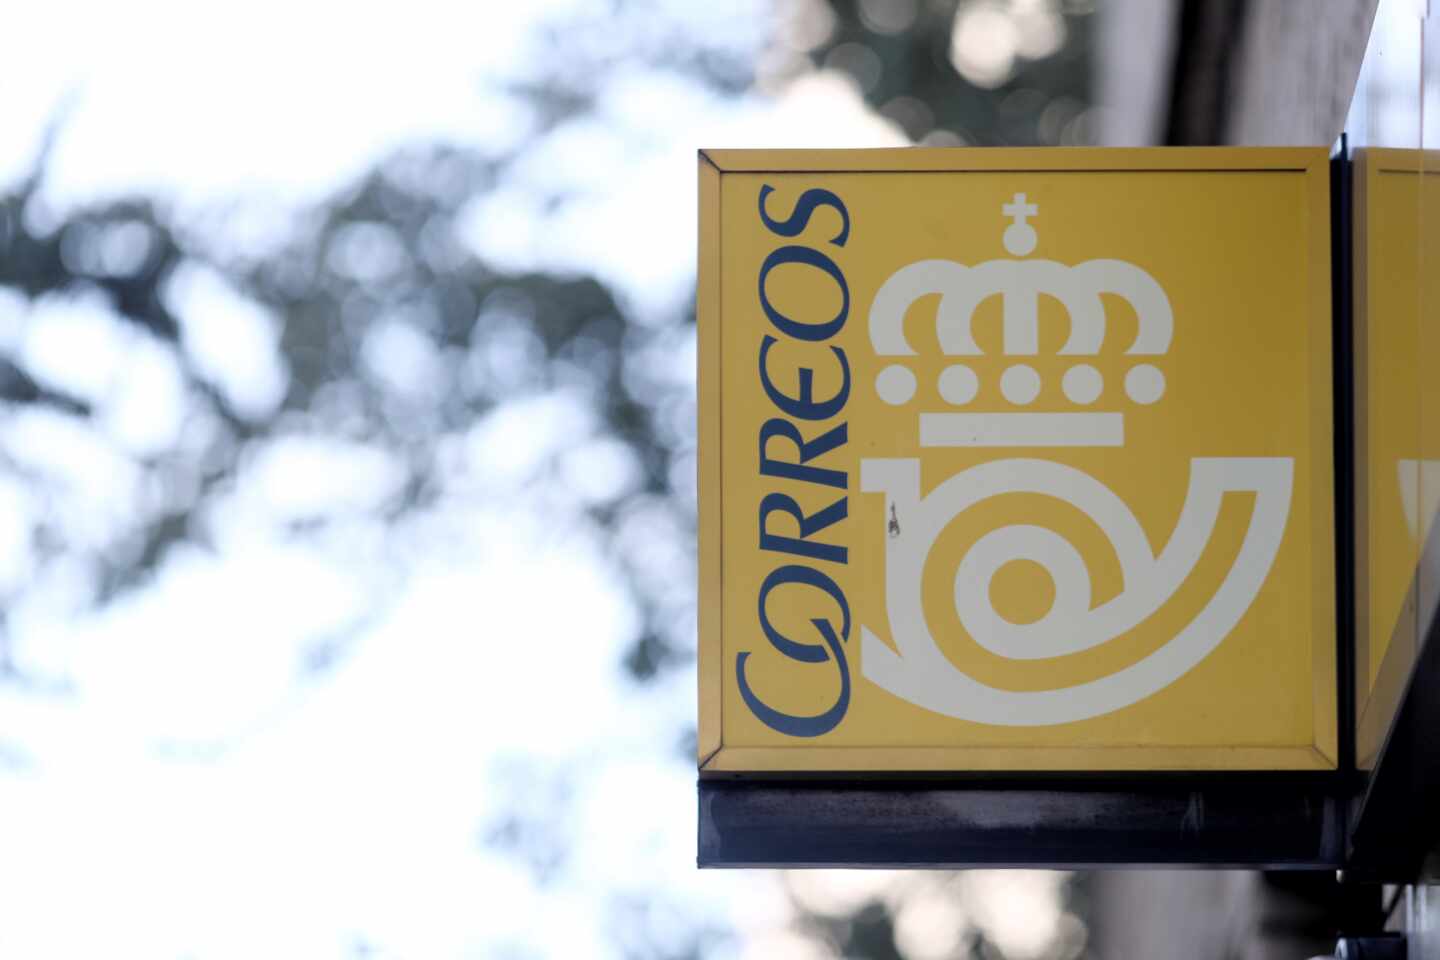 Cartel y logo de una oficina de Correos.